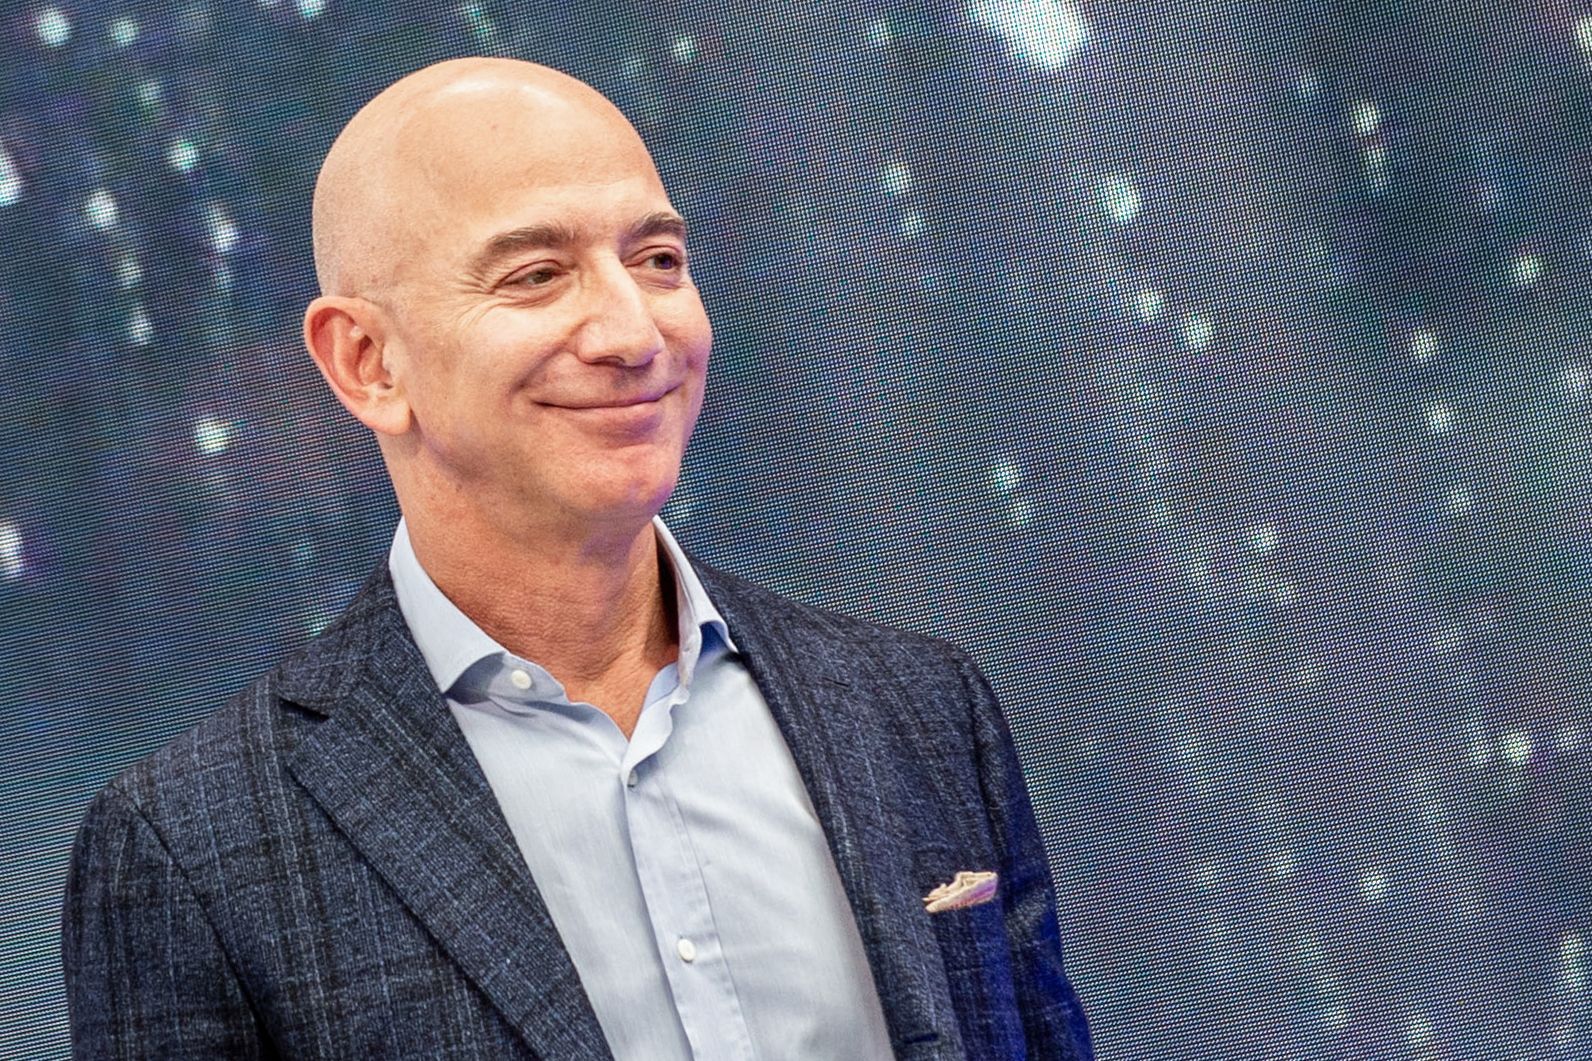 Miliardarul Jeff Bezos a vândut acţiuni Amazon în valoare de 4 miliarde de dolari în ultima săptămână